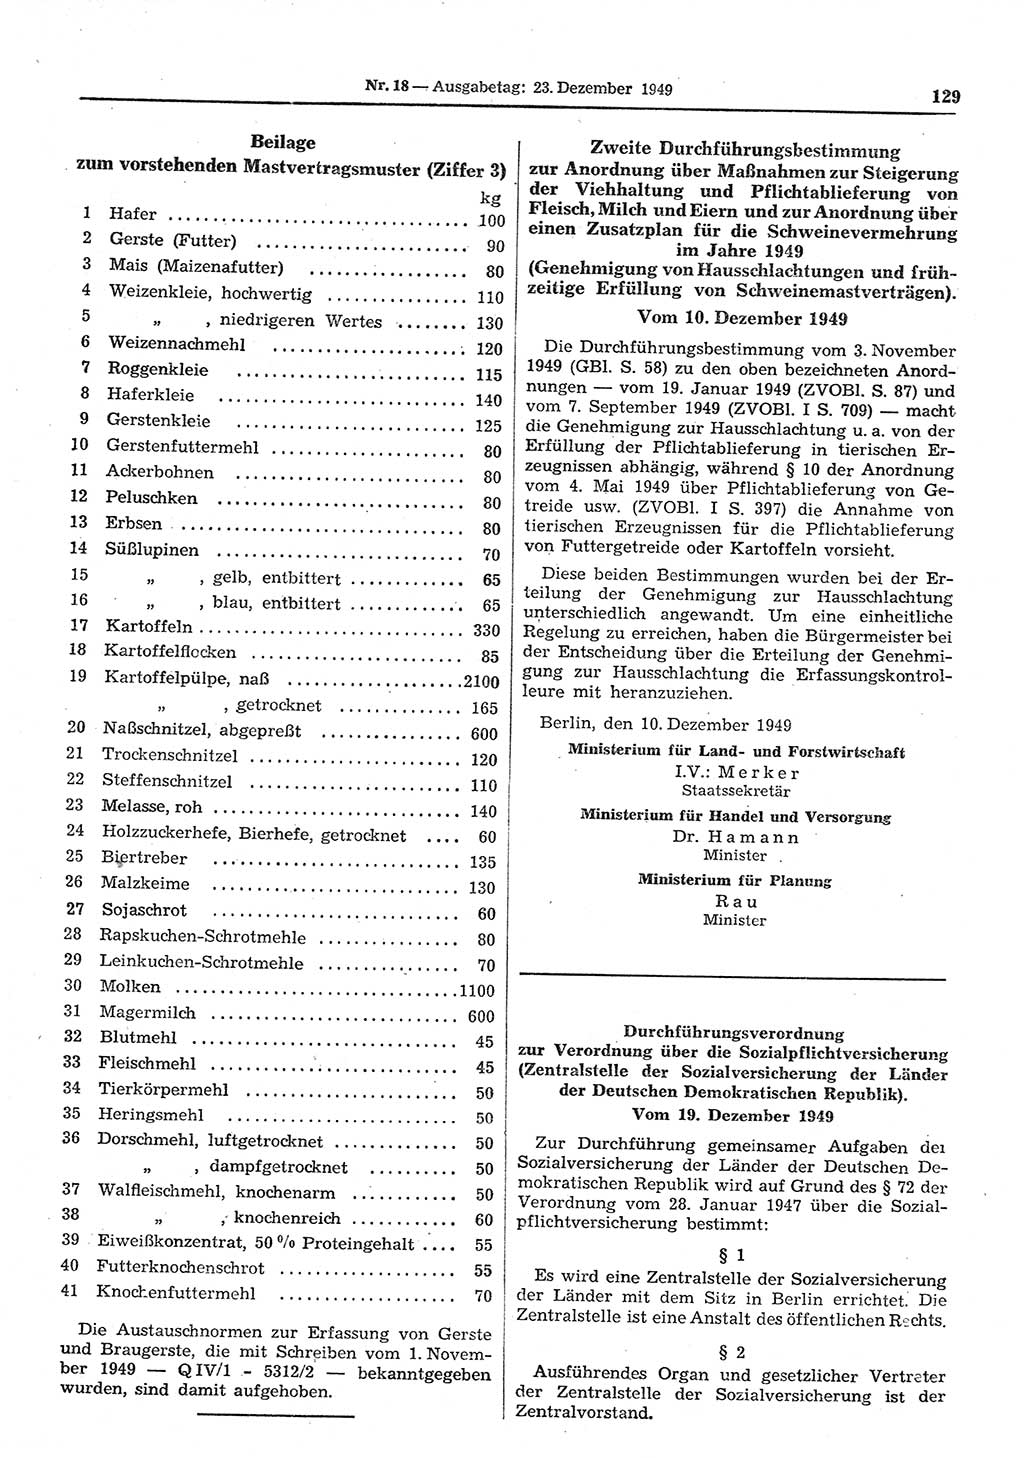 Gesetzblatt (GBl.) der Deutschen Demokratischen Republik (DDR) 1949, Seite 129 (GBl. DDR 1949, S. 129)